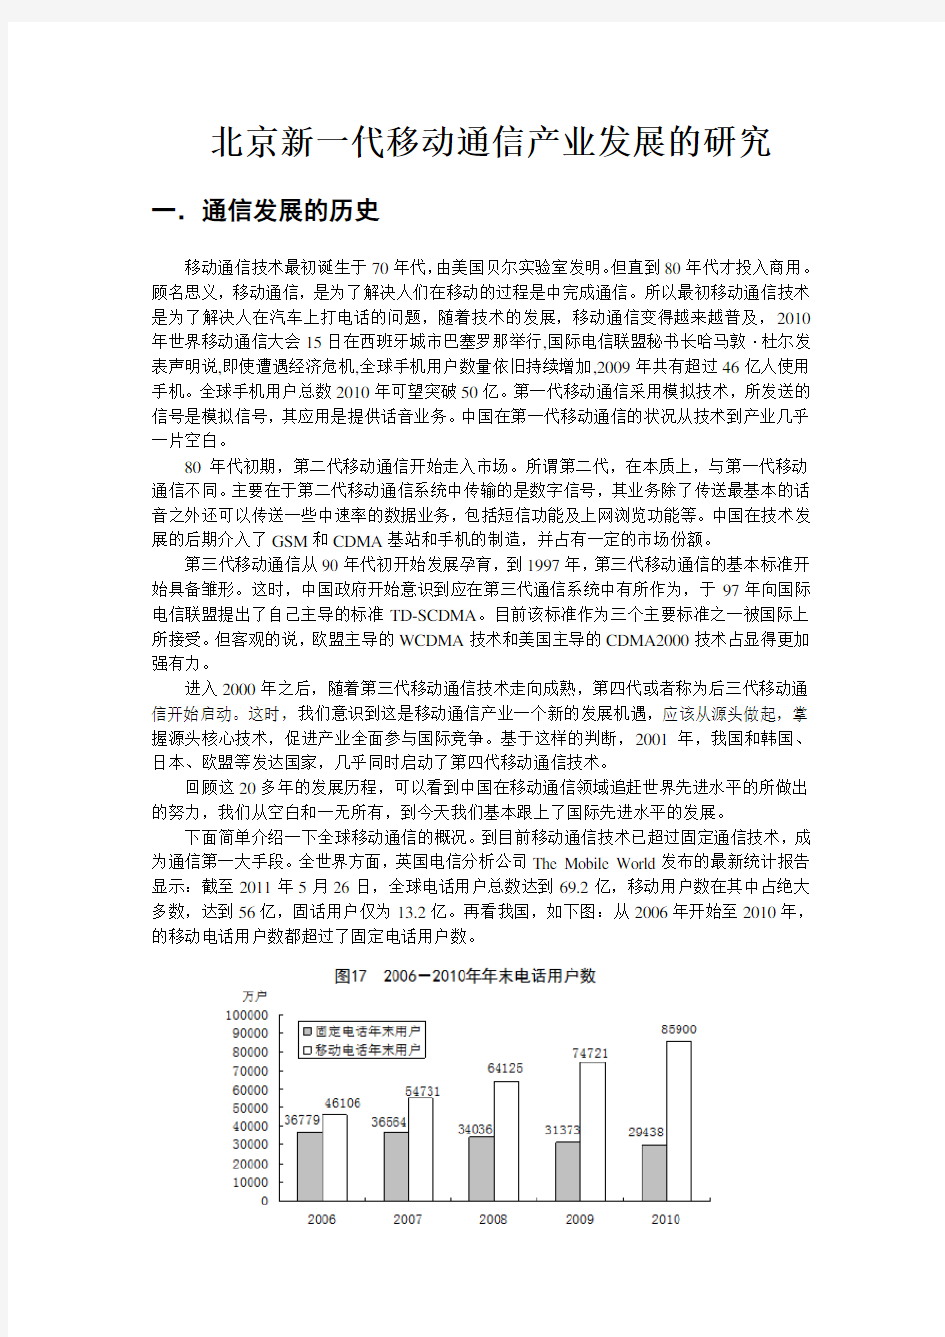 北京新一代移动通信产业发展的研究 张正一 最初版